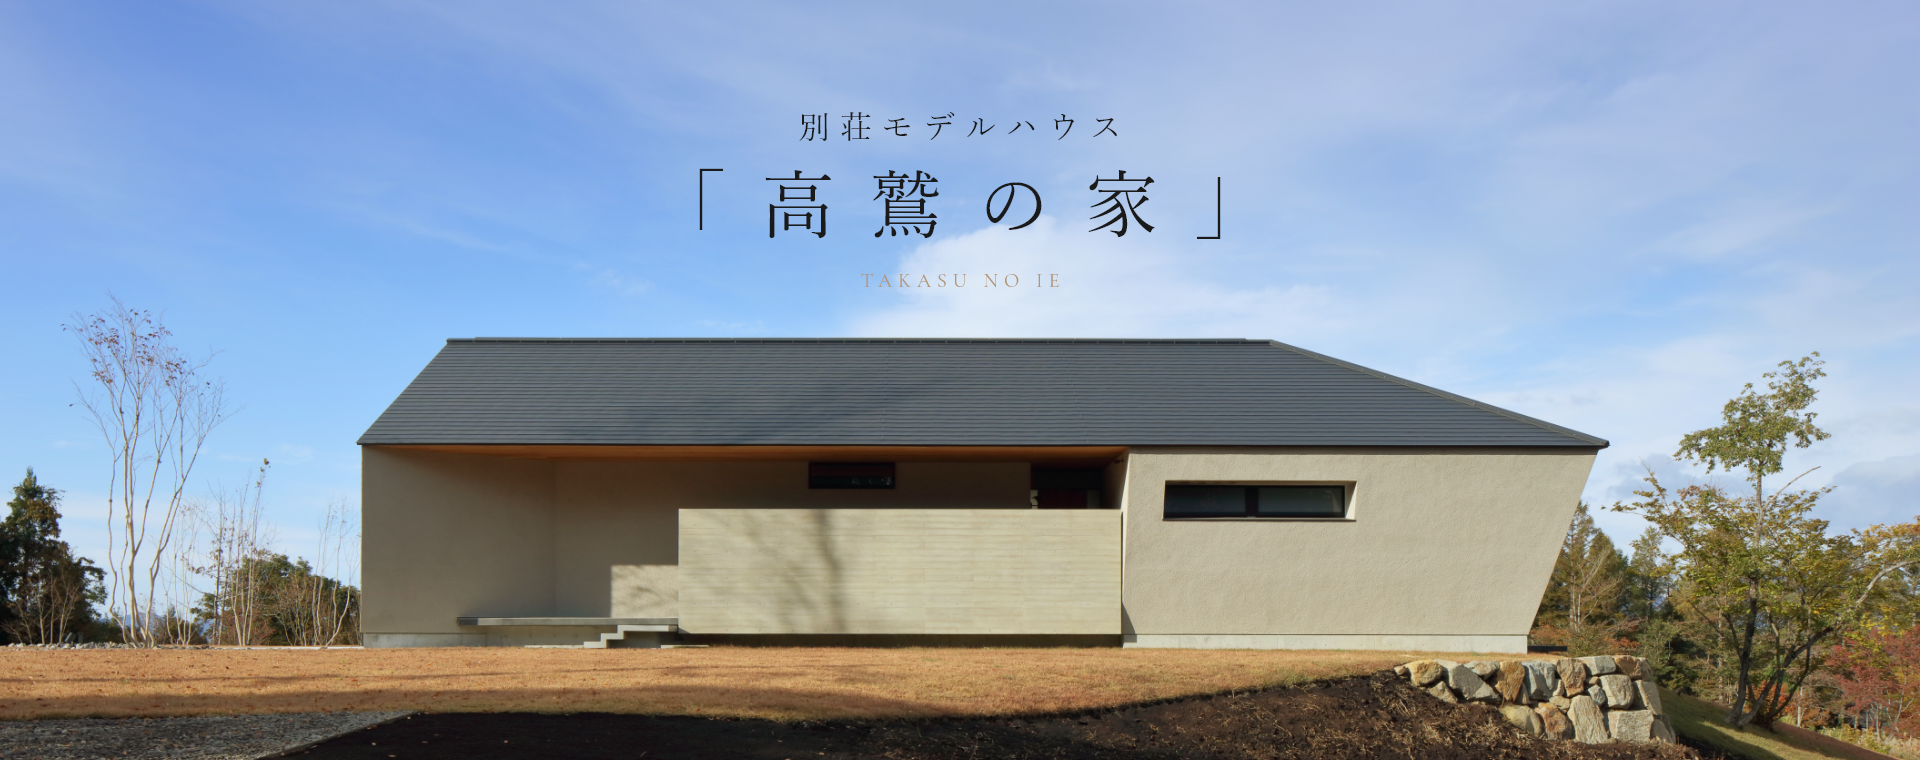 別荘モデルハウス 「高鷲の家」 TAKASU NO IE